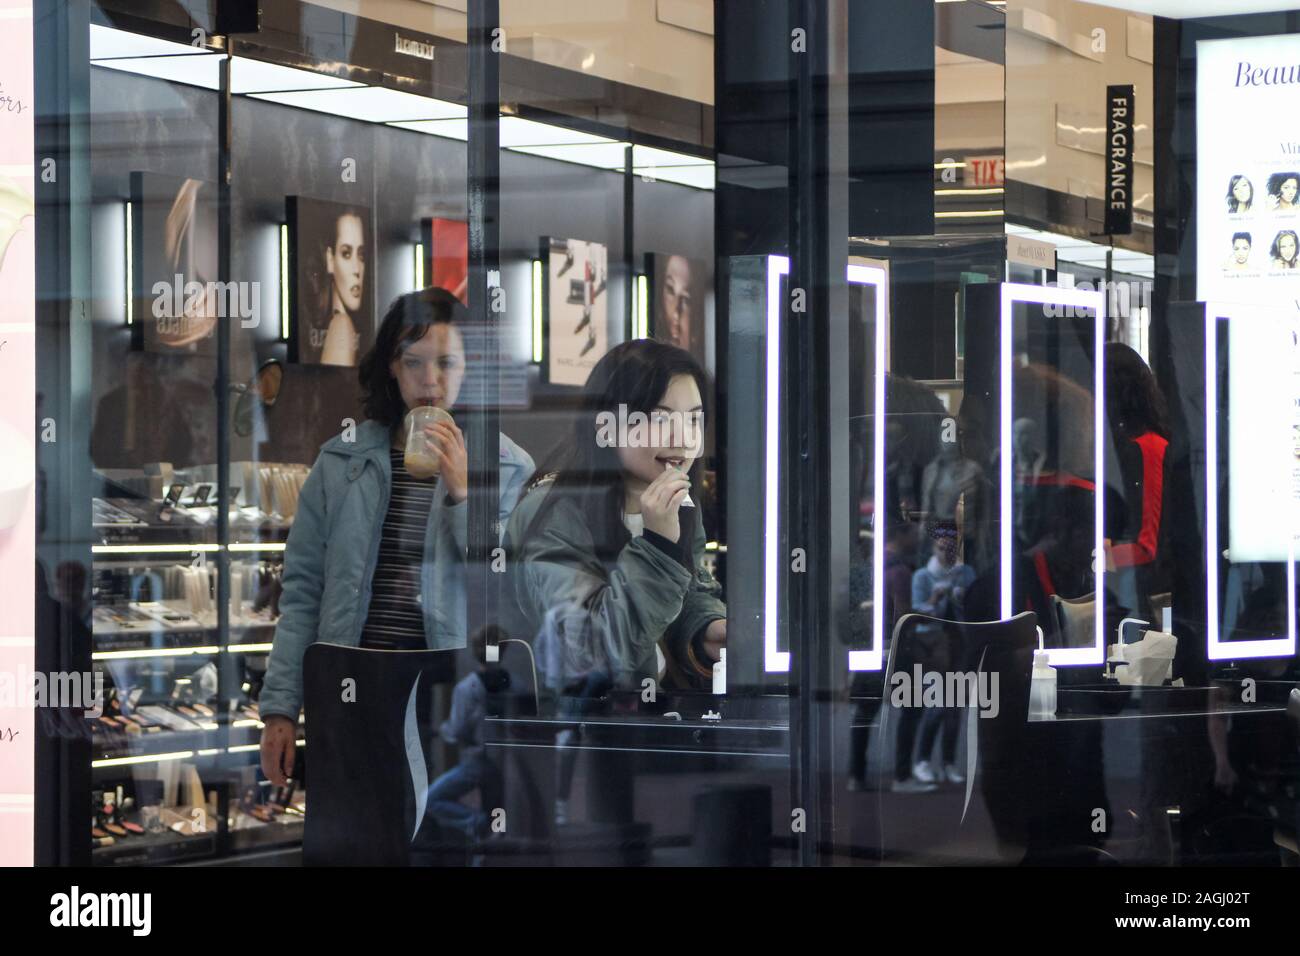 Les jeunes femmes ou adolescentes à beauty store vue à travers la fenêtre de la boutique Banque D'Images